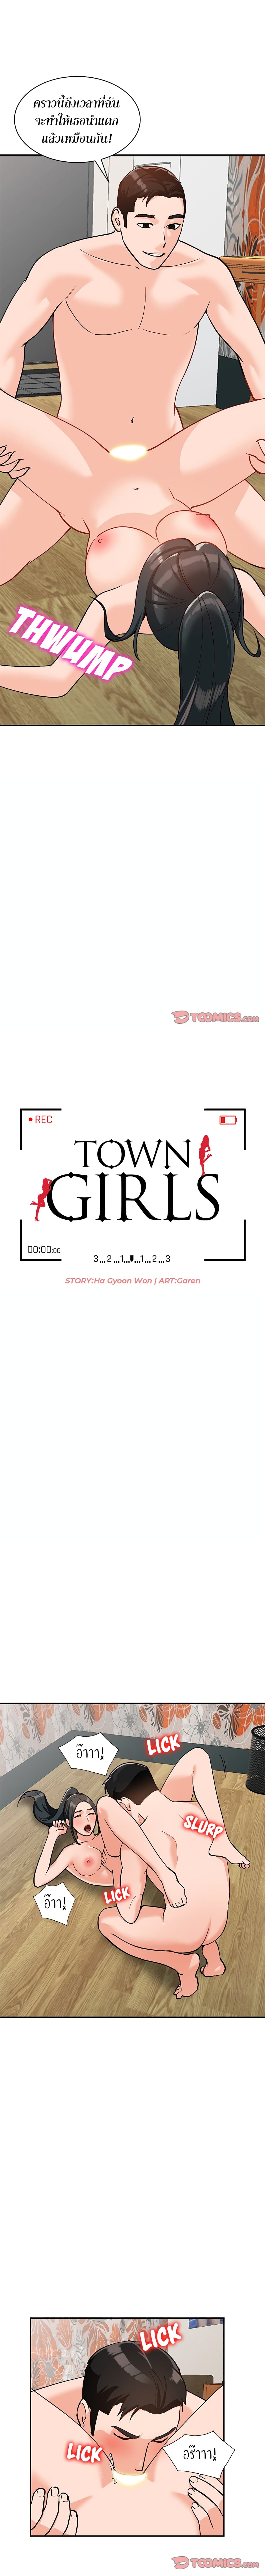 Town Girls 32 (2)